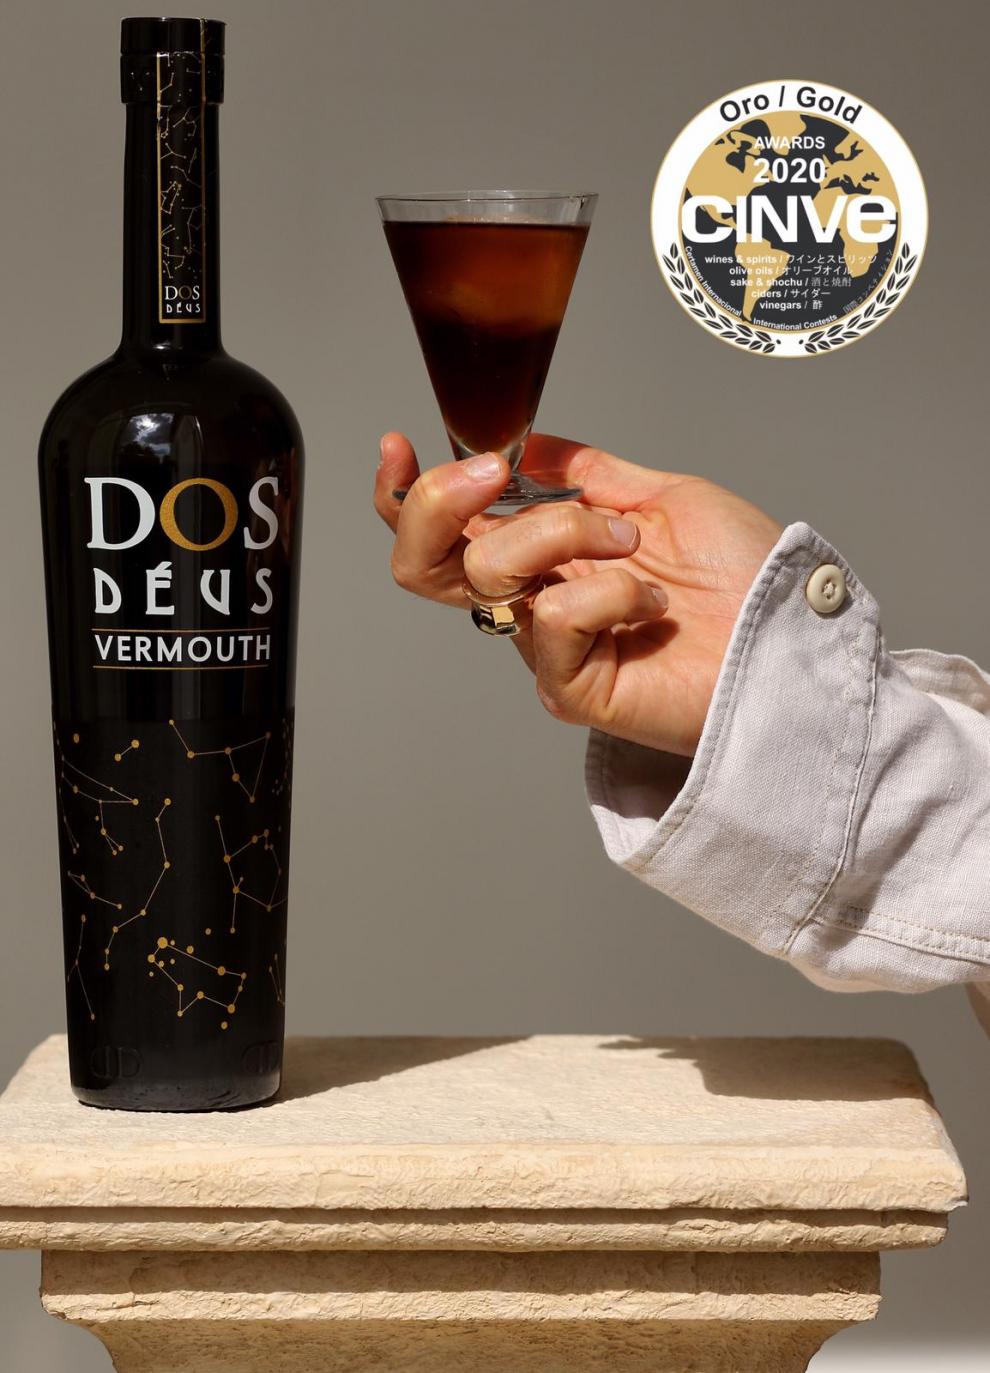 imagen botella Dos Deus y copa con sello CINVE